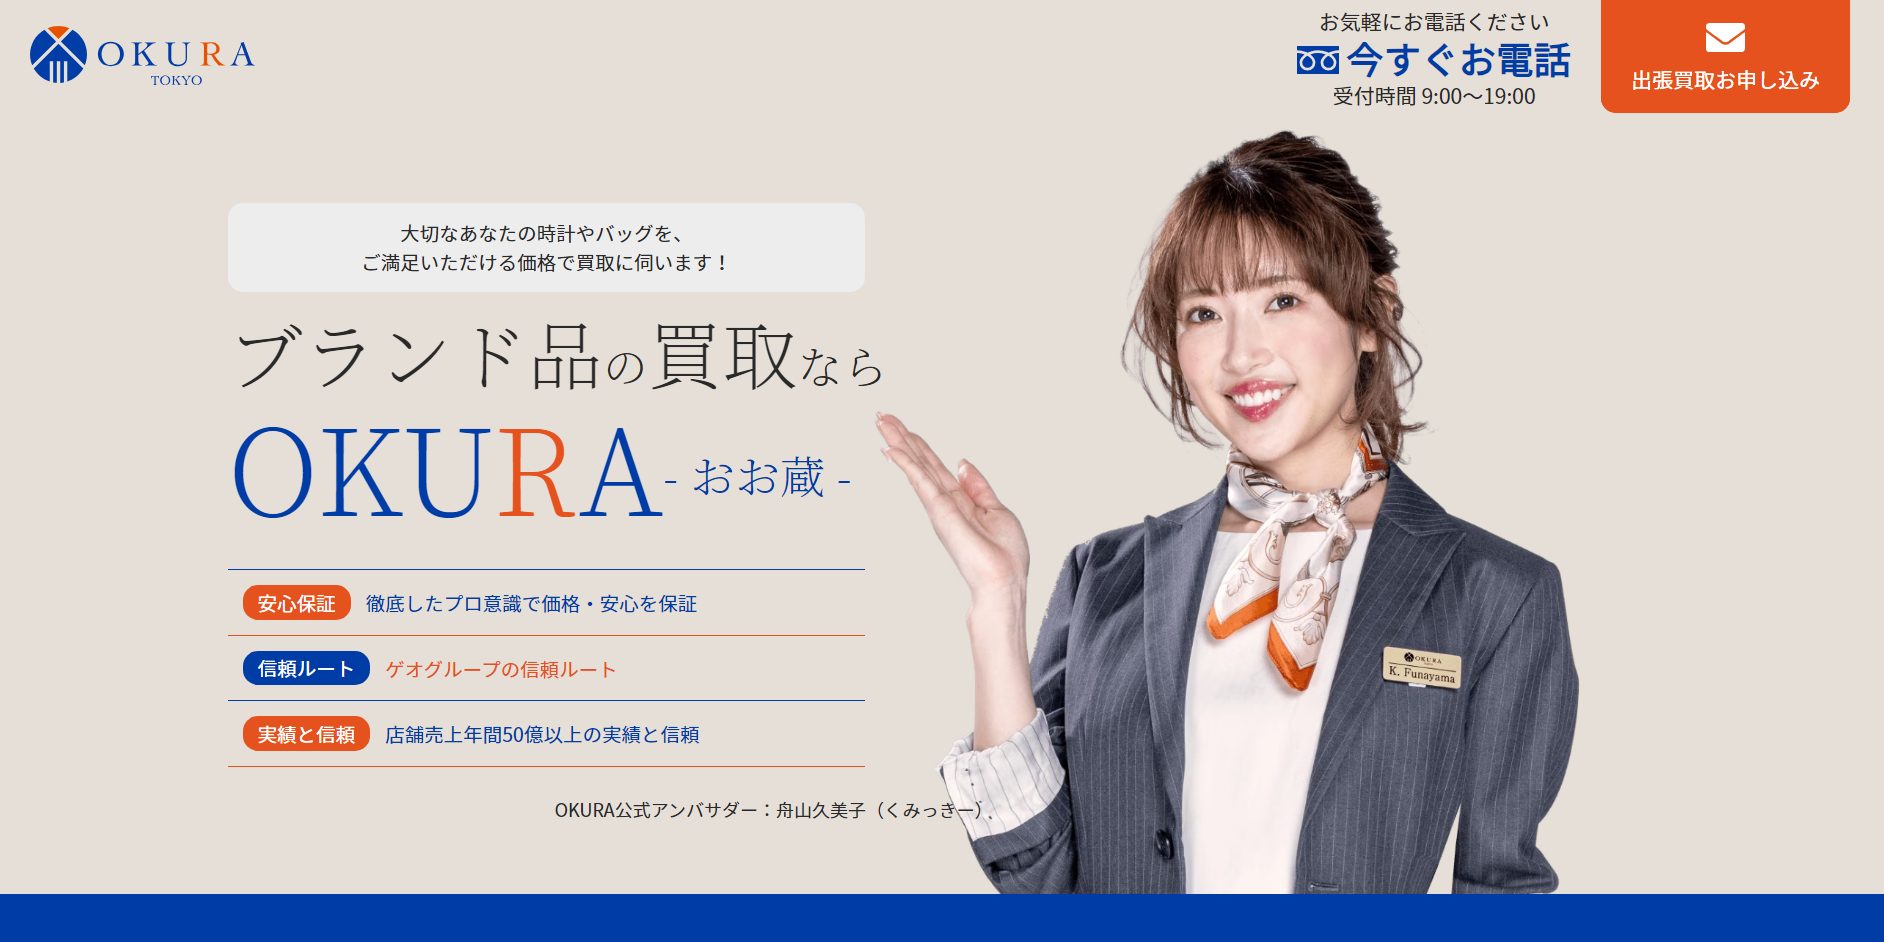 OKURA公式サイトのブランド品買取のページ